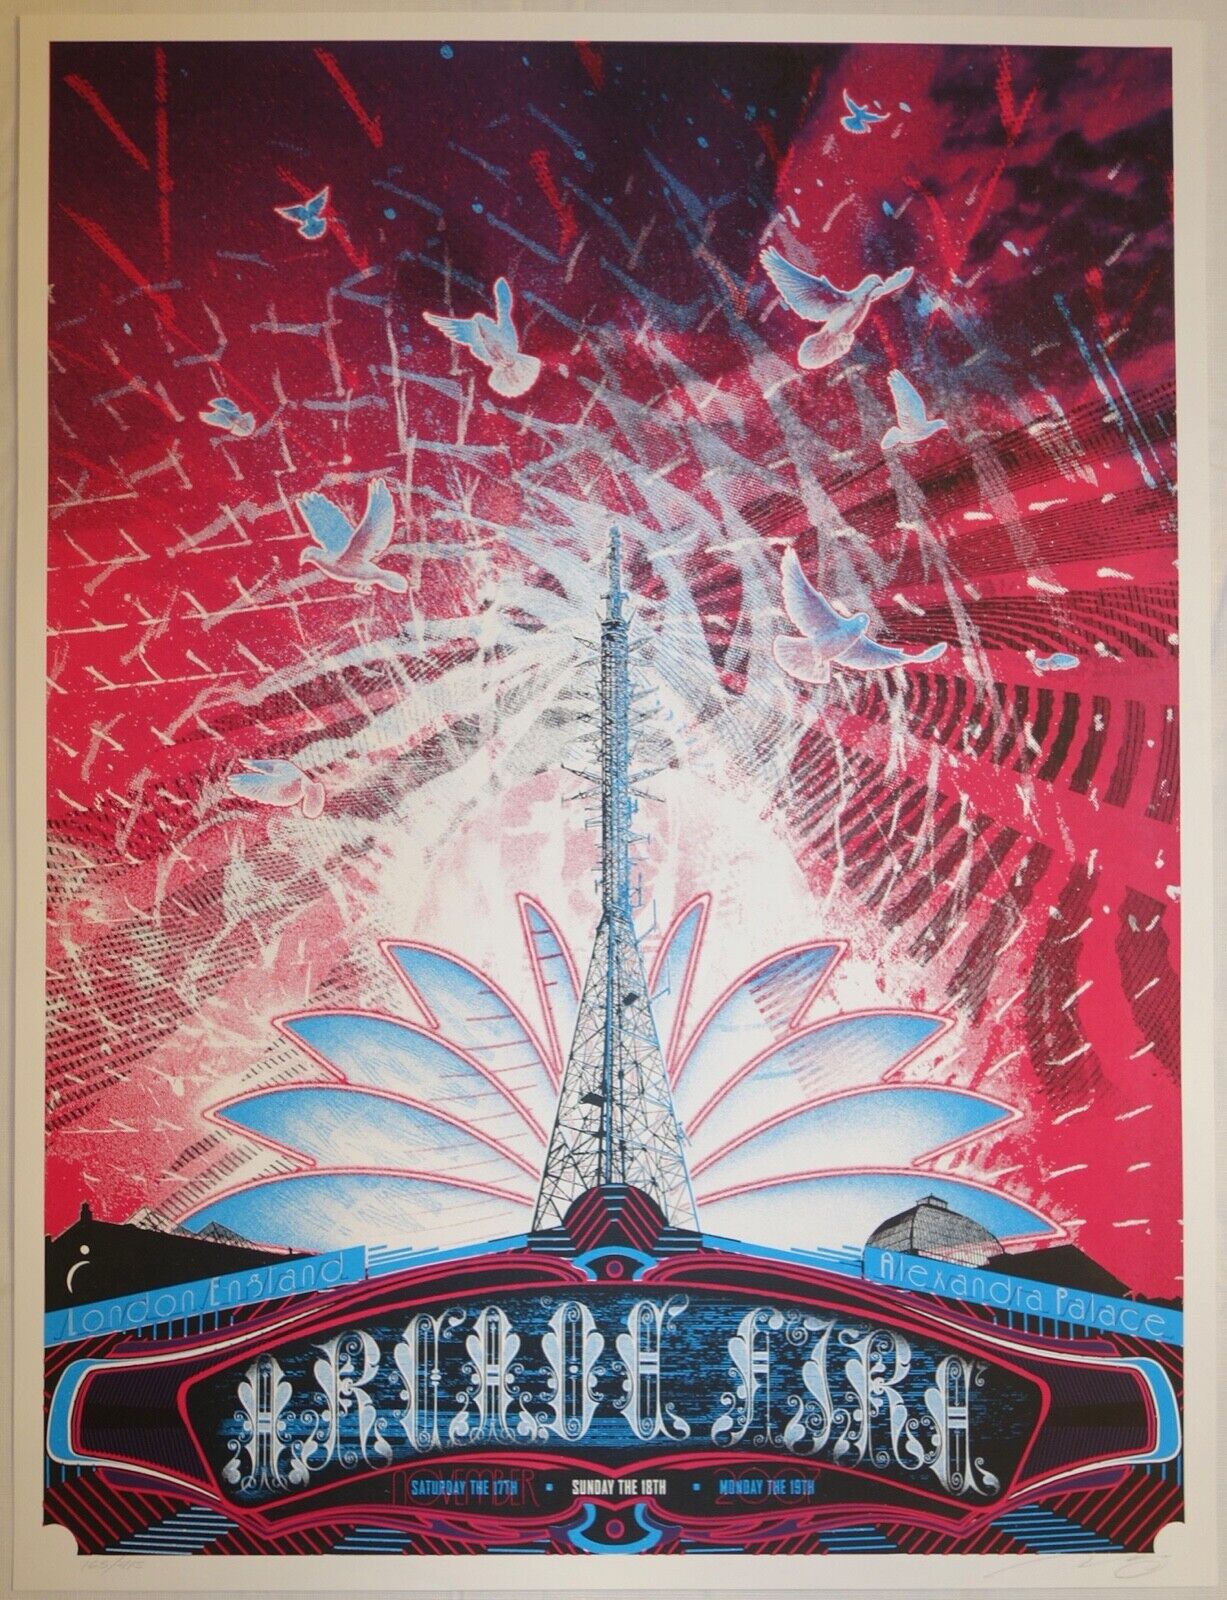 2007 The Arcade Fire - London Ii Silkscreen Concert Poster S/n By Burlesque